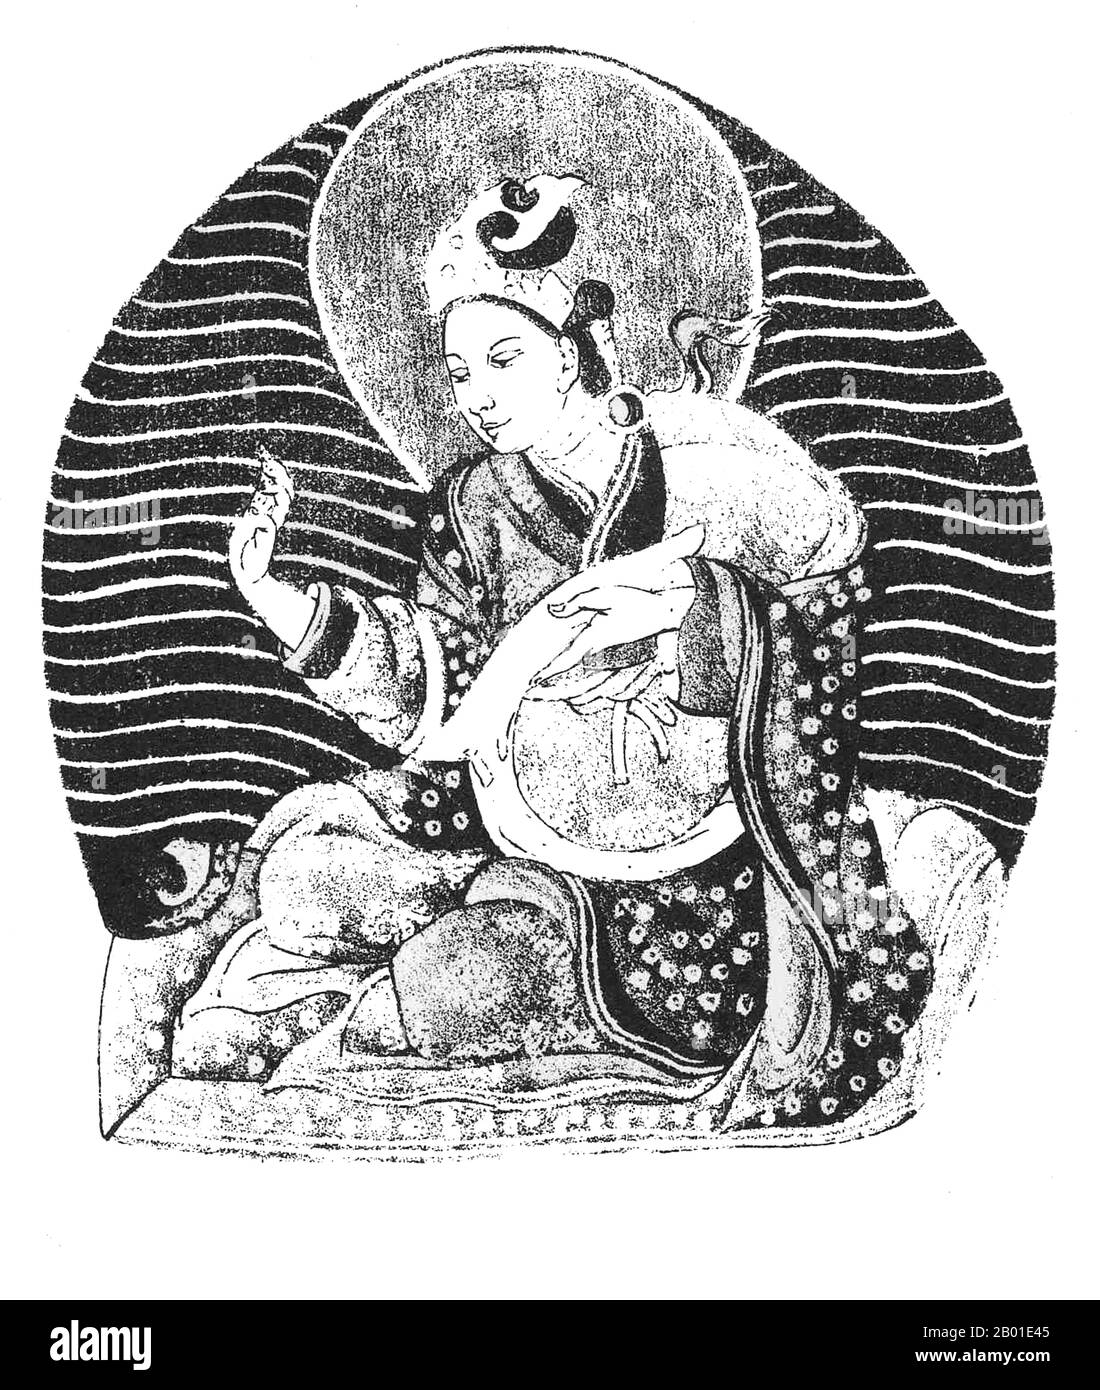 Cina/Tibet: Manjushri Kirti, leggendario re di Shambhala. Illustrazione da 'contributi sul Tibet' di Sarat Chandra Das (1849-1917), 1882. Si dice che Manjushrí Kírti (tibetano: Rigdan Tagpa) sia nato nel 159 a.C. e abbia governato Shambhala, che aveva 300.510 seguaci della religione Mlechha (Yavana o 'occidentale') che vivevano in essa, alcuni dei quali adoravano il sole. Si dice che abbia espulso tutti gli eretici dai suoi domini, ma in seguito, dopo aver ascoltato le loro petizioni, gli ha permesso di tornare. Per il loro beneficio e per il beneficio di tutti gli esseri viventi, ha spiegato gli insegnamenti di Kalachakra. Foto Stock